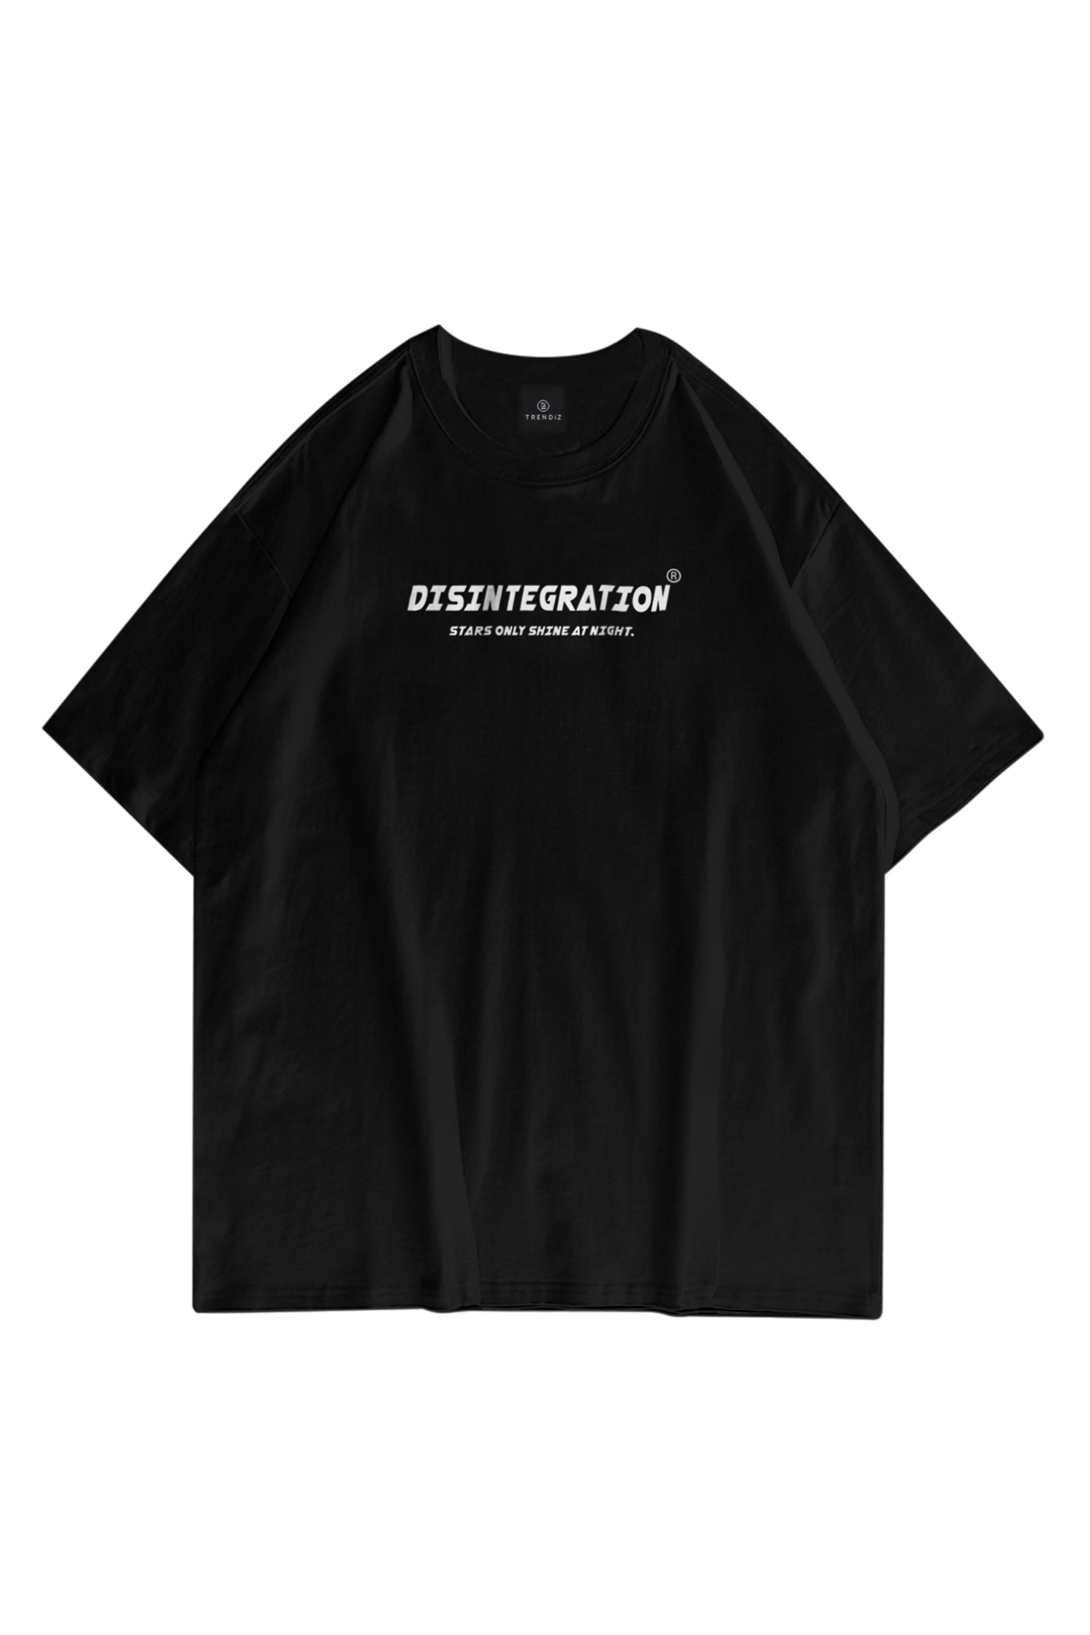 Trendiz Unisex Disintegration Siyah Tshirt